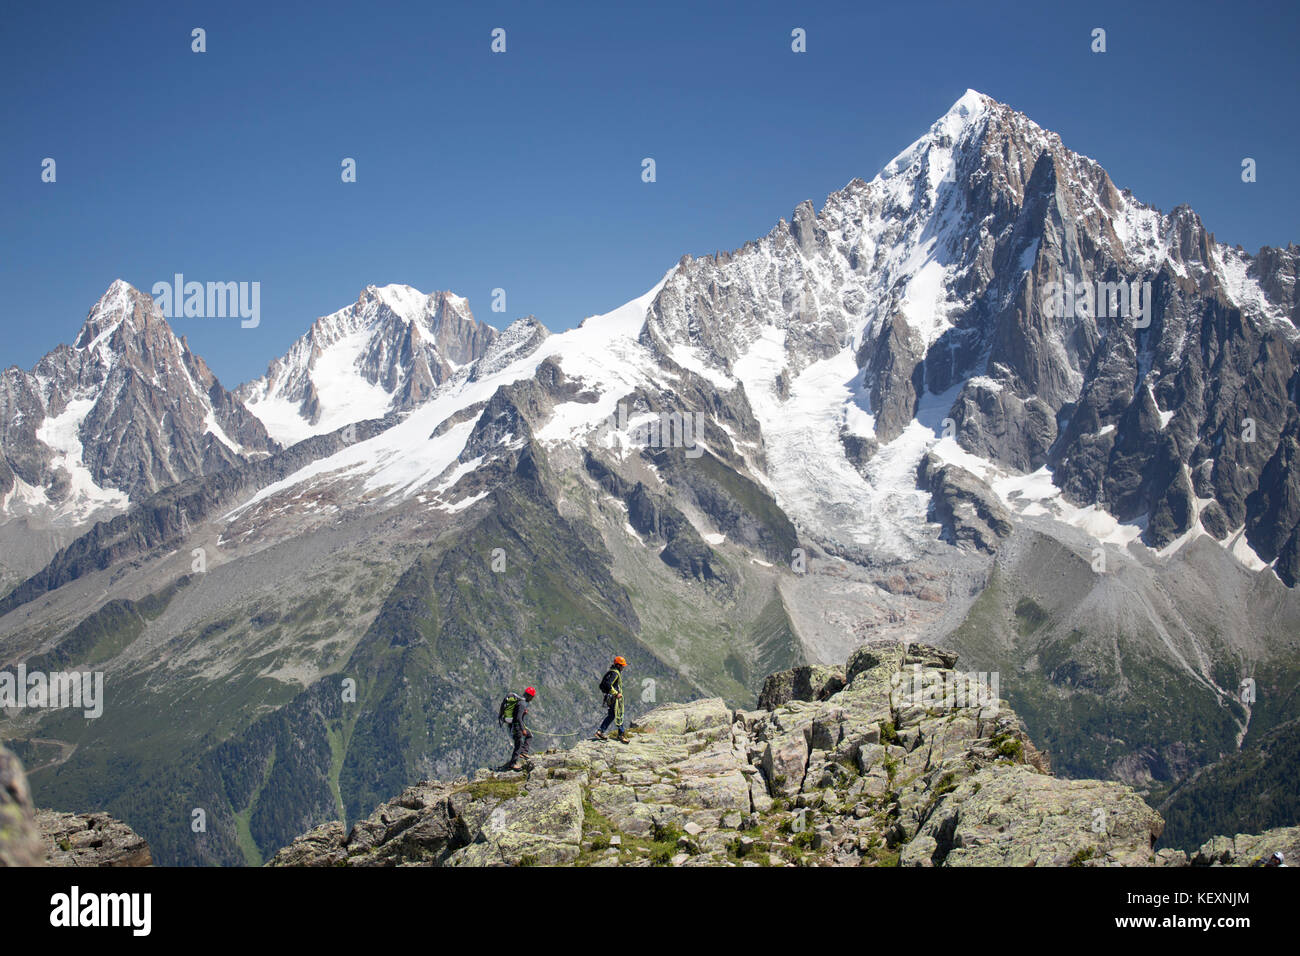 Deux alpinistes sur une arête rocheuse au-dessus de Chamonix, dans les Alpes françaises. Banque D'Images